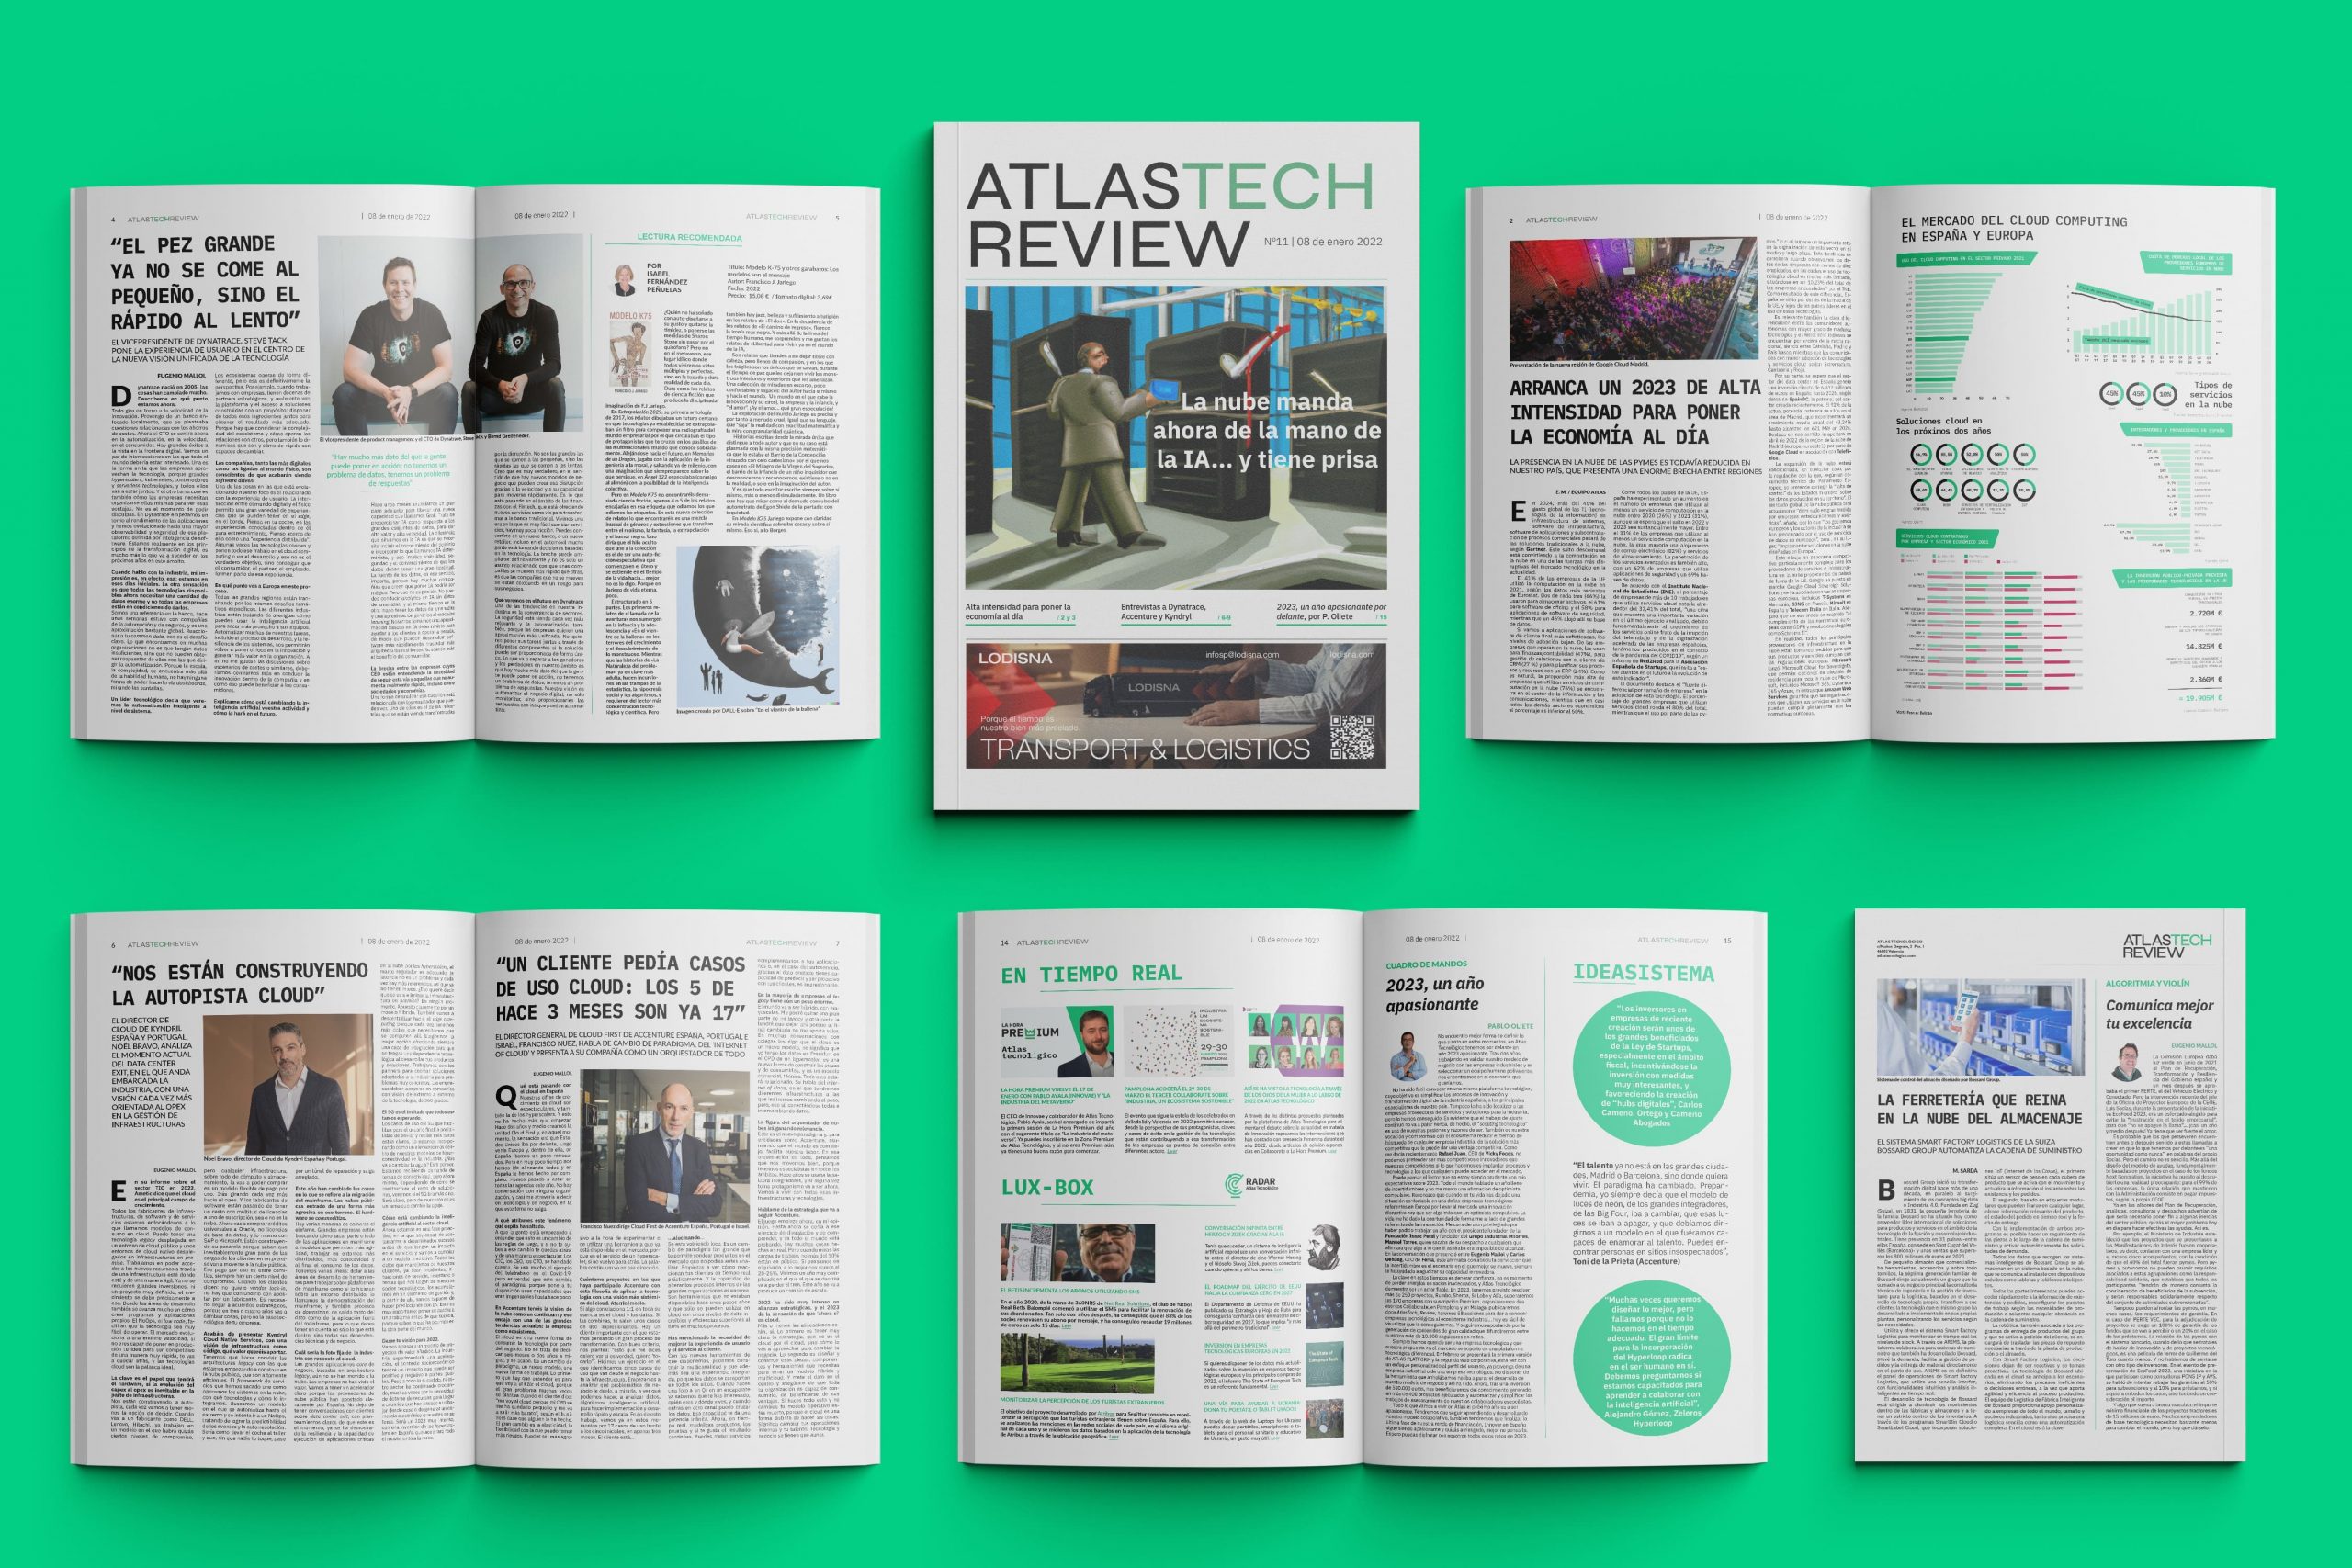 ATLASTECH REVIEW analiza el año intenso del cloud que se avecina de la mano de la IA para poner la economía al día